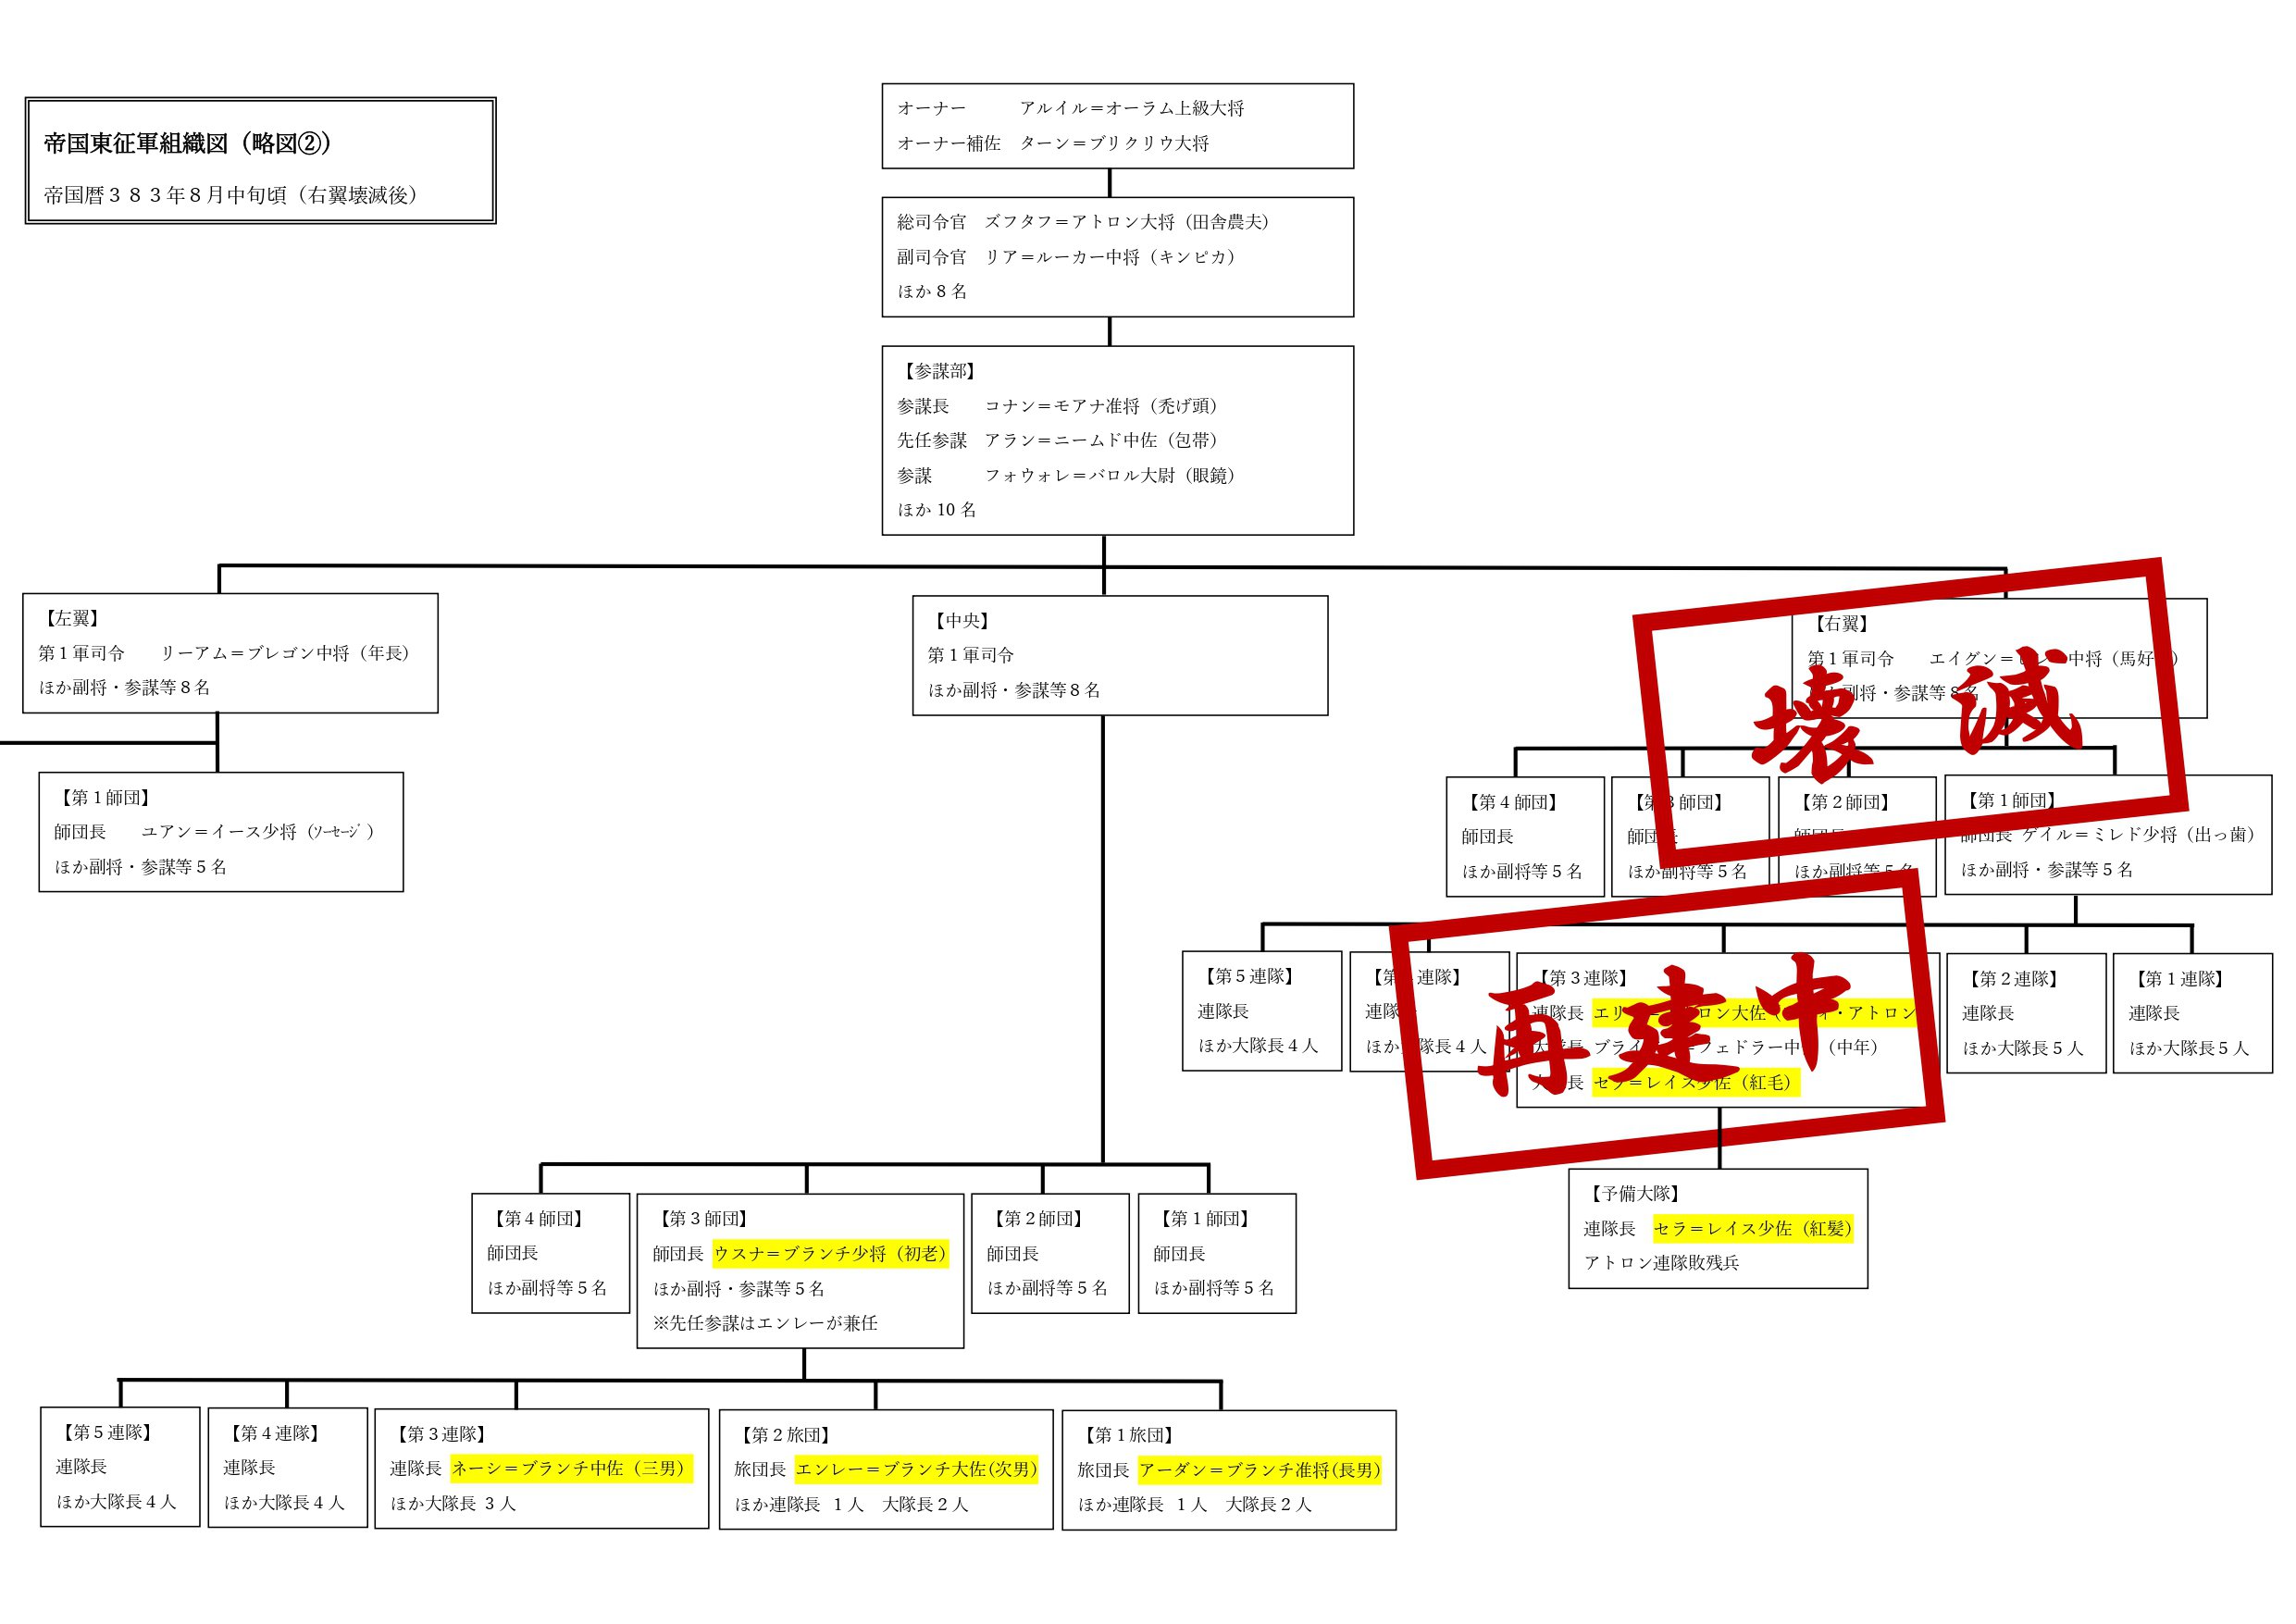 帝国東征軍の組織図を修正してみました 秋山 文里の近況ノート カクヨム